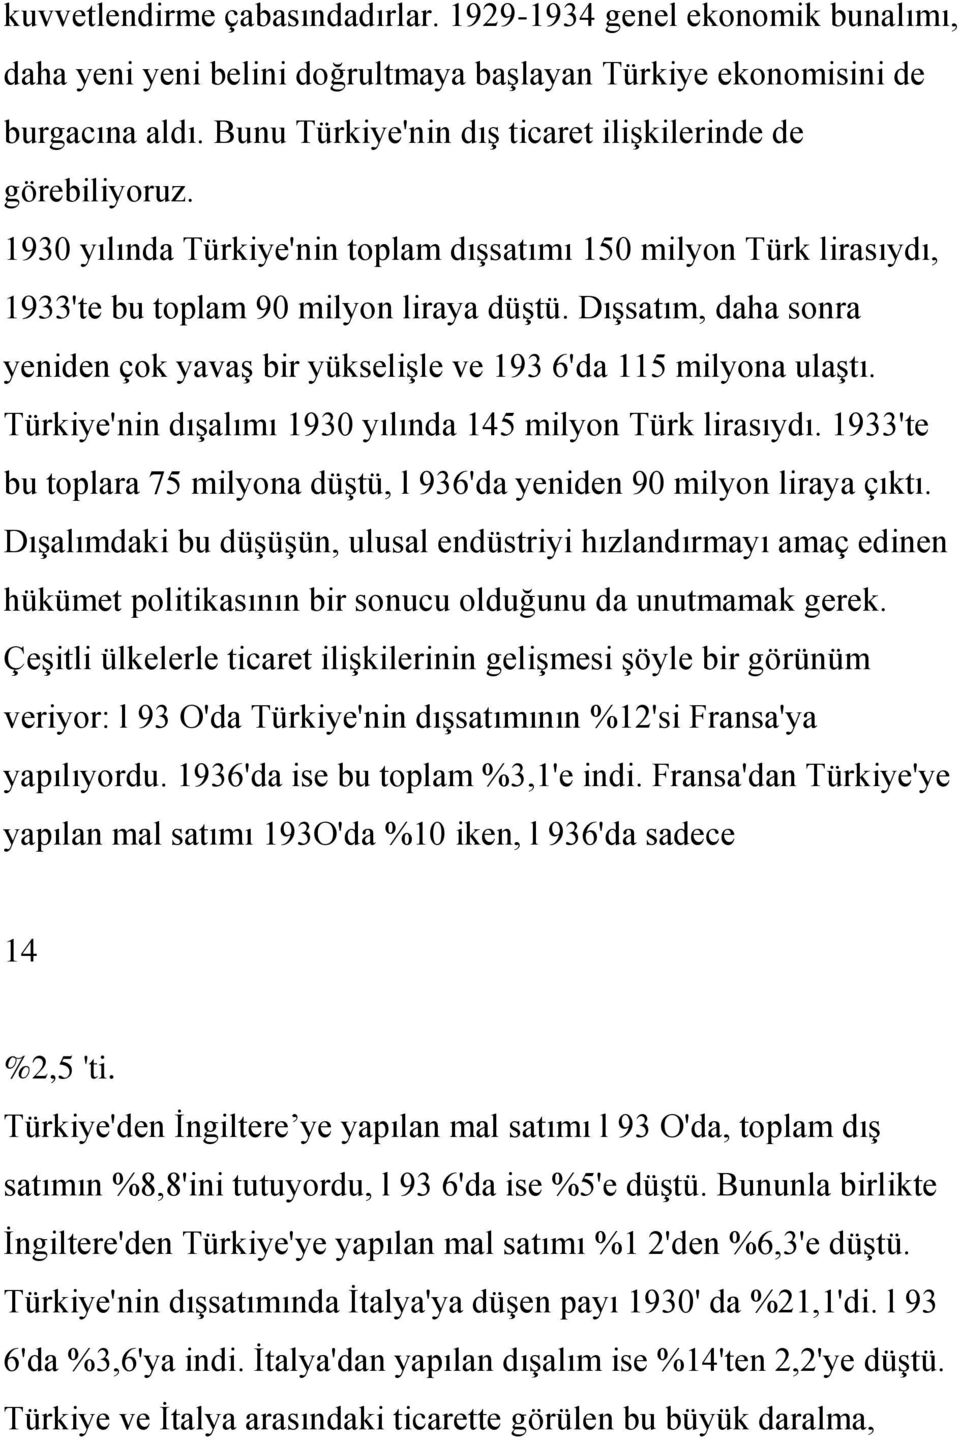 Dışsatım, daha sonra yeniden çok yavaş bir yükselişle ve 193 6'da 115 milyona ulaştı. Türkiye'nin dışalımı 1930 yılında 145 milyon Türk lirasıydı.